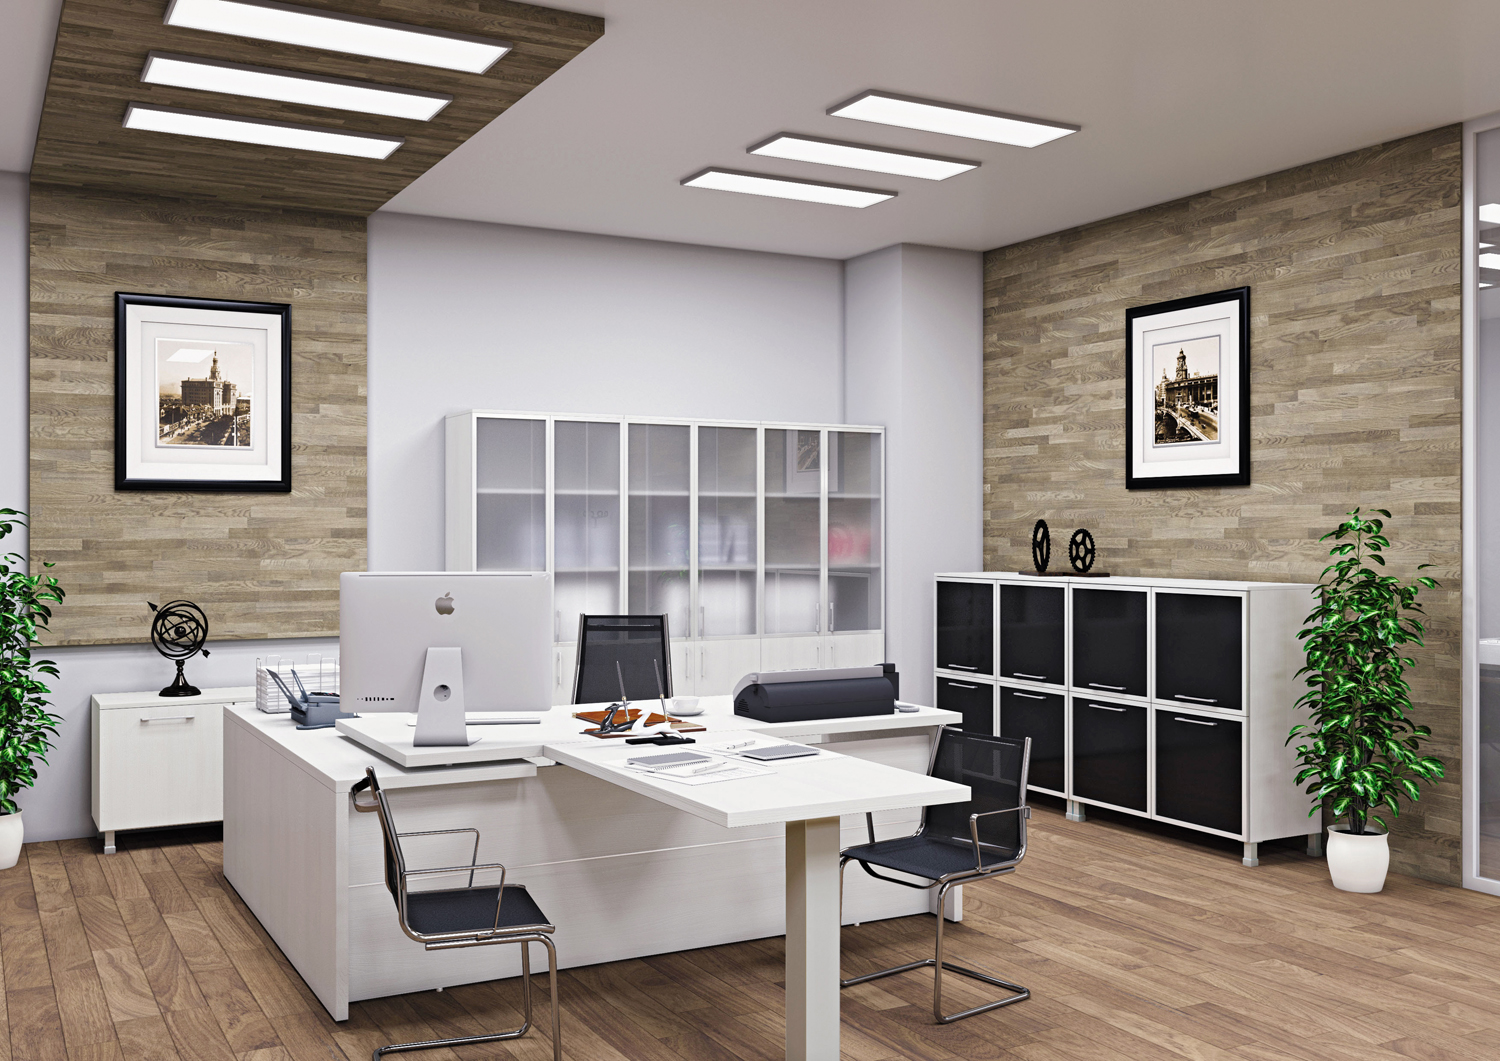 Мебель для офиса, как оформить свой офис грамотно и удобно